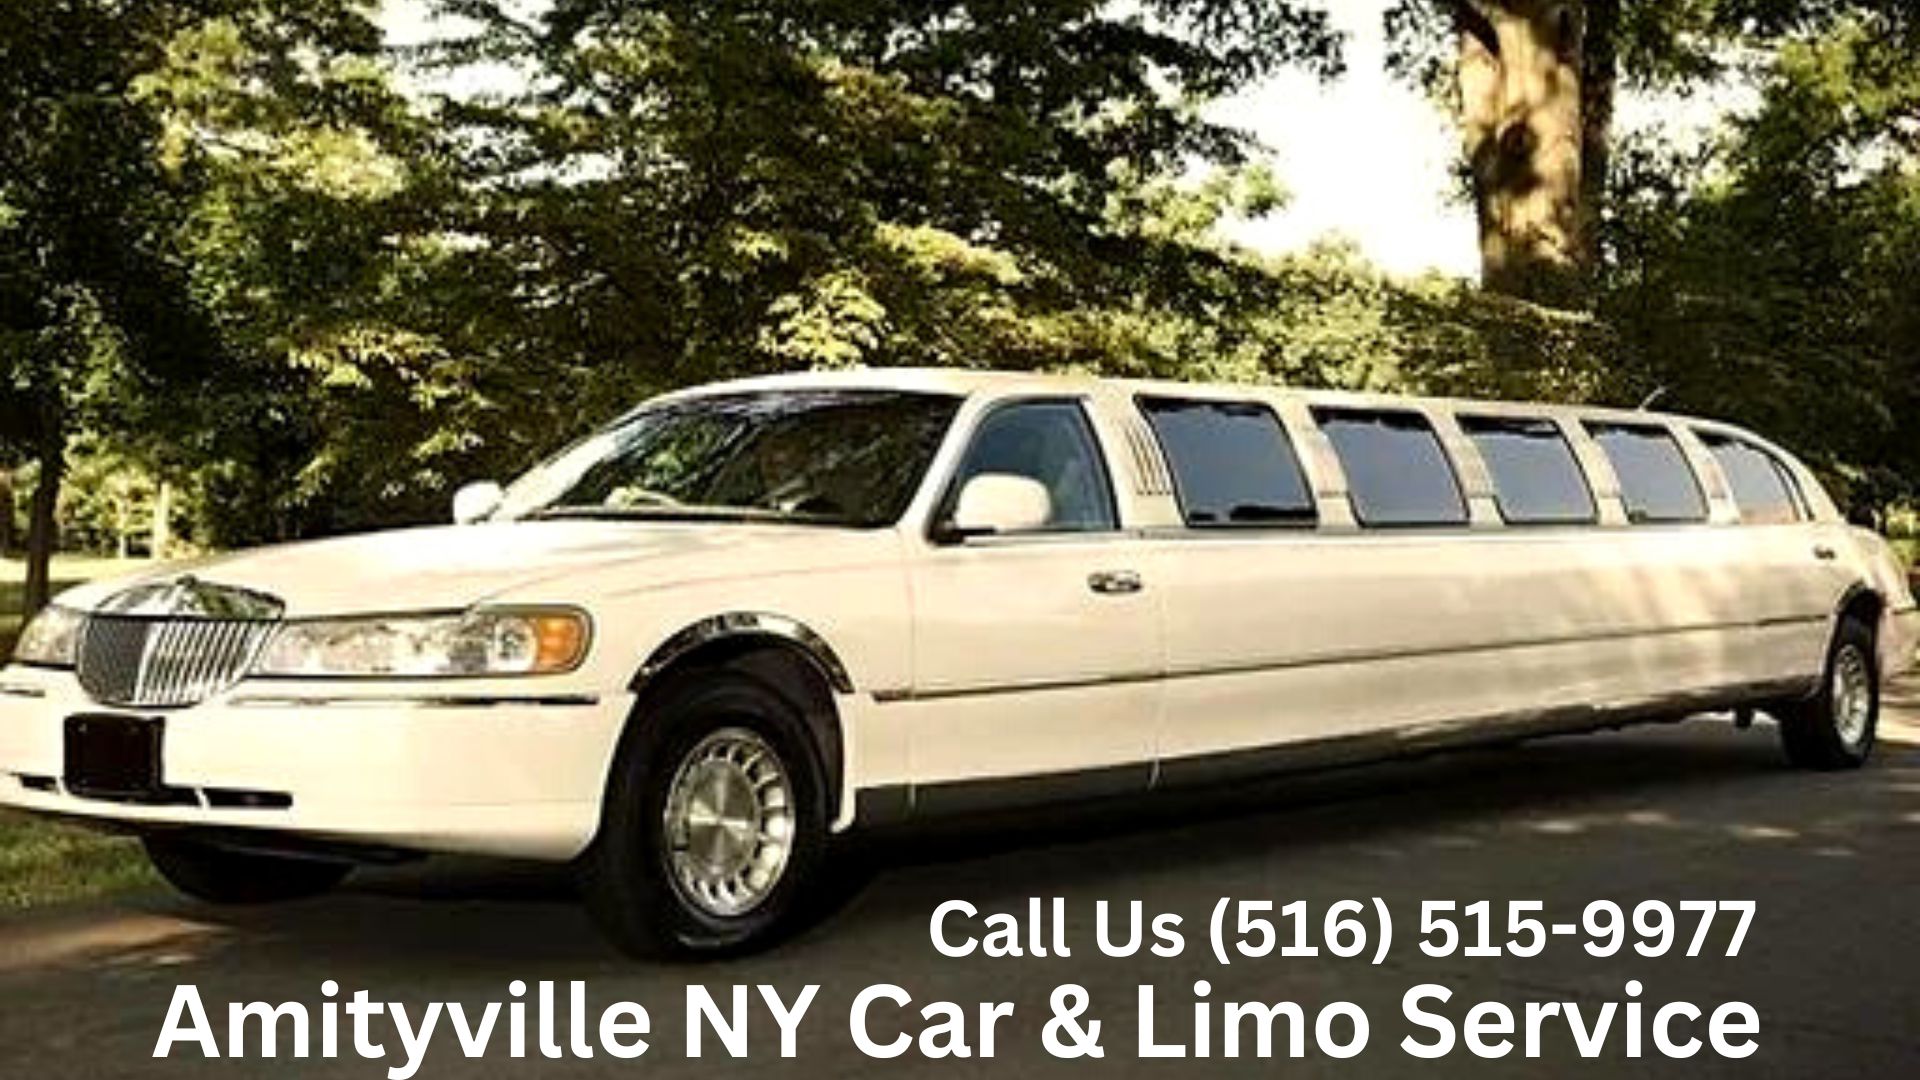 Amityville NY Car & Limo